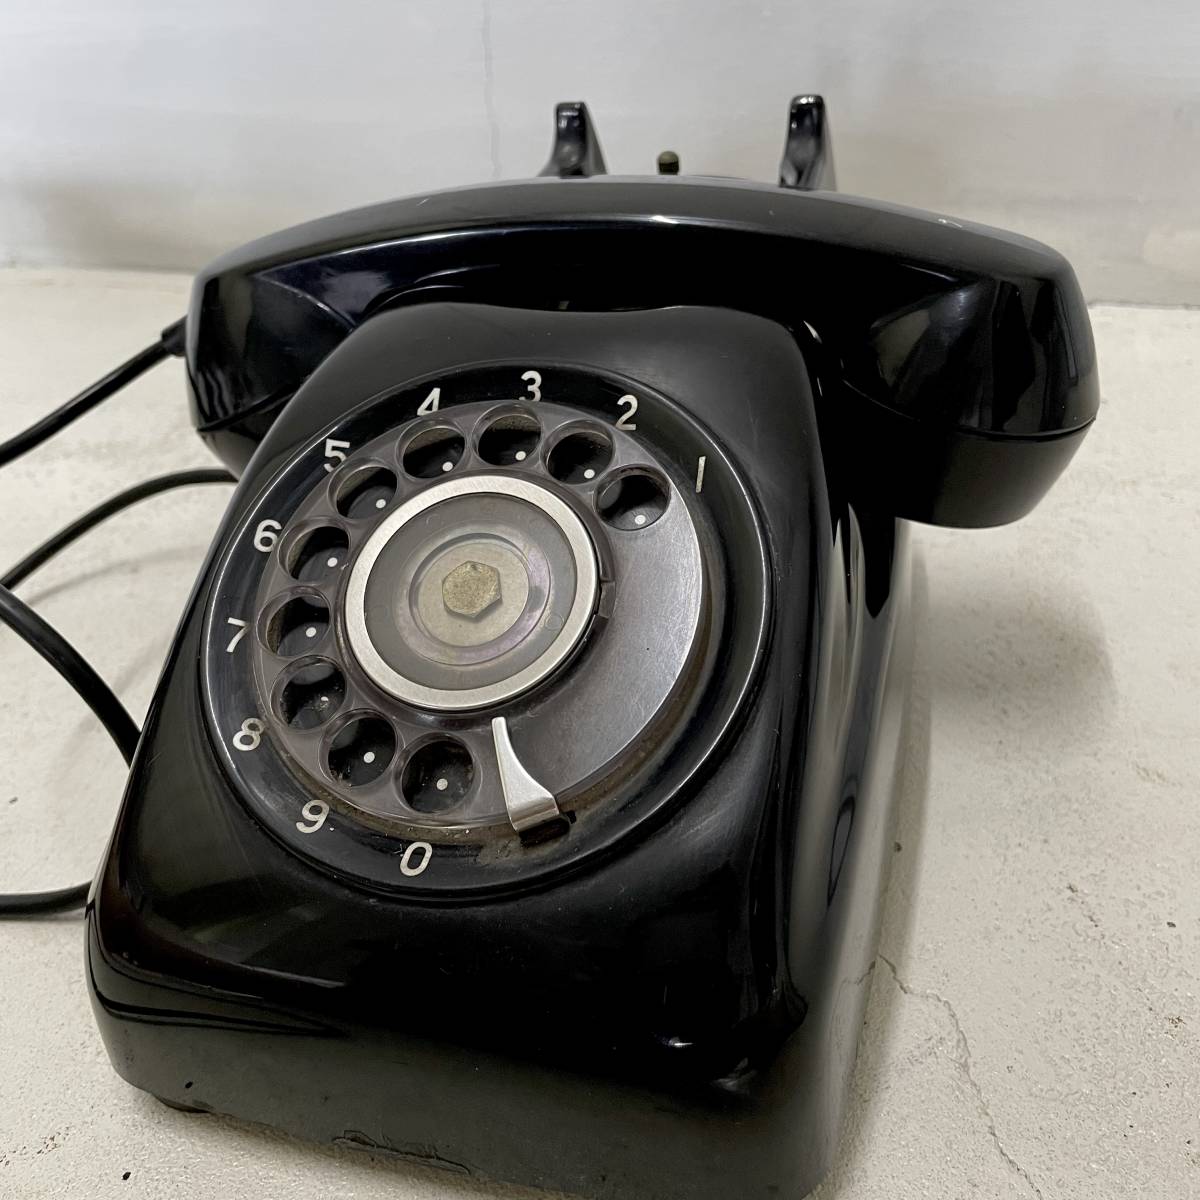 1964 год  3 оба ... TELE-GOL 600  черный  телефон   циферблат  ... /  Сёва  ретро   винтажный    антиквариат   интерьер  ... идет в комплекте   нерабочий товар    коллекция 